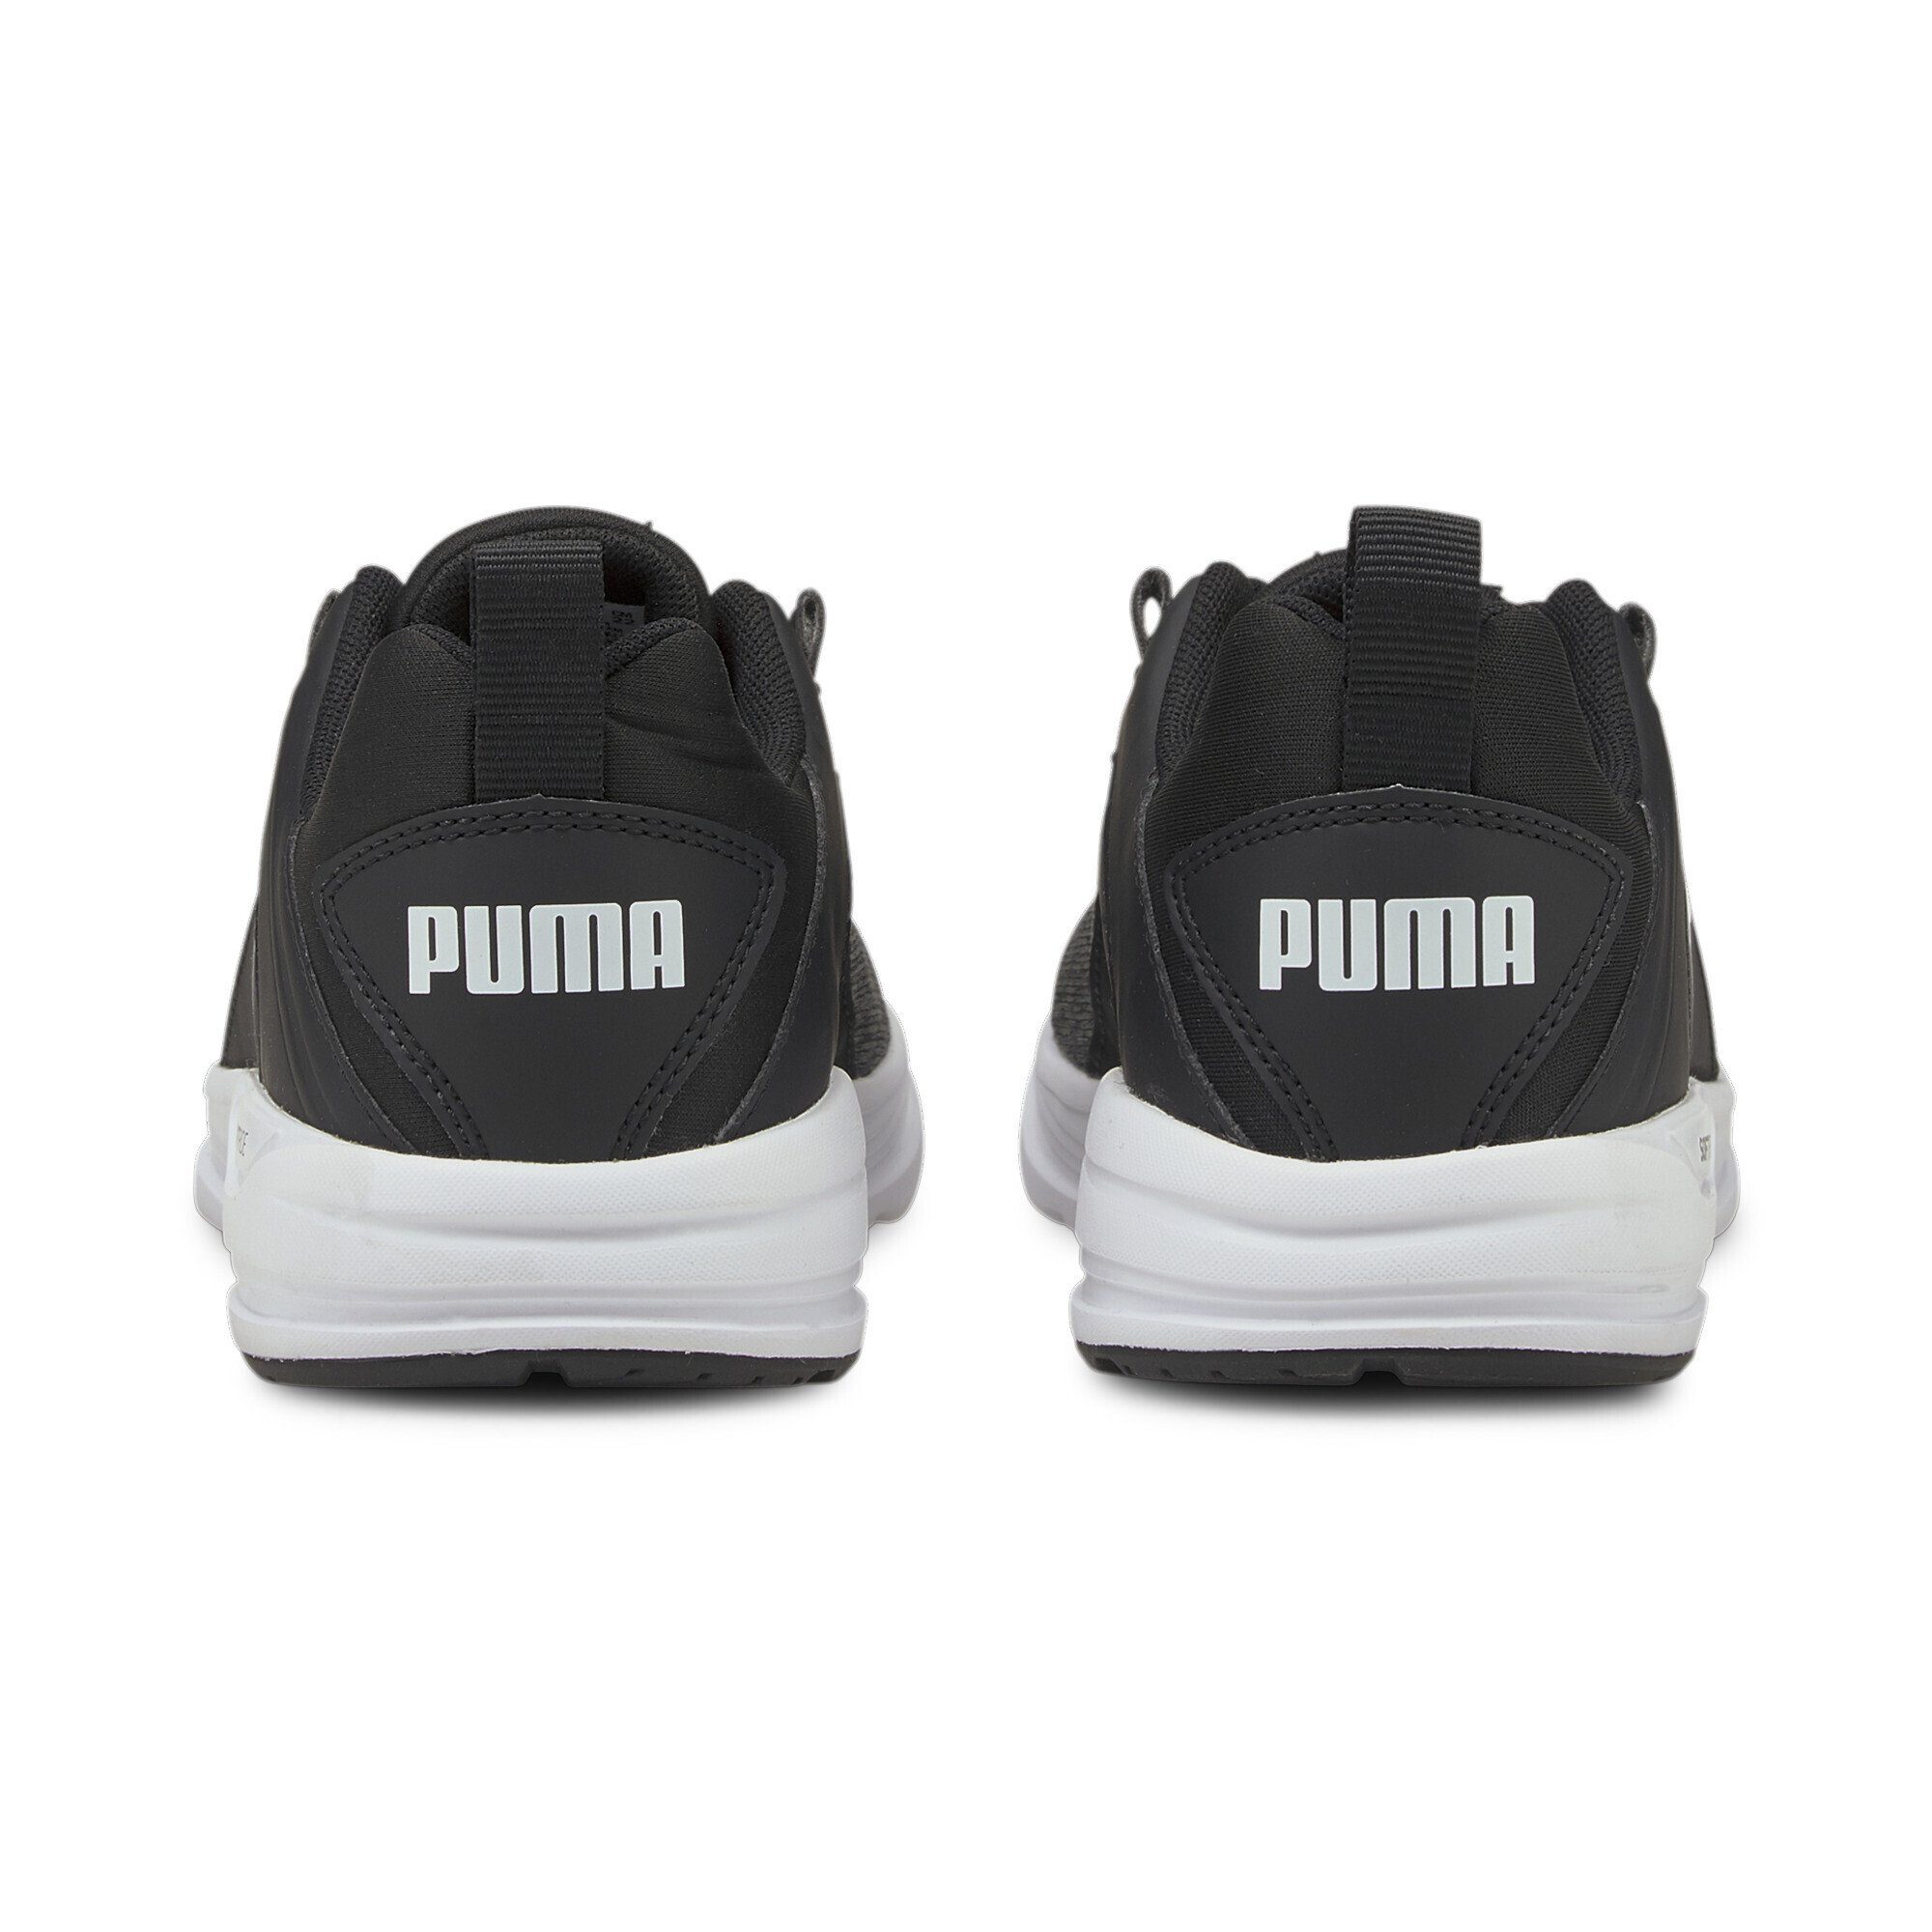 PUMA Comet 2 Black Alt Sneaker White Laufschuh Jugendliche